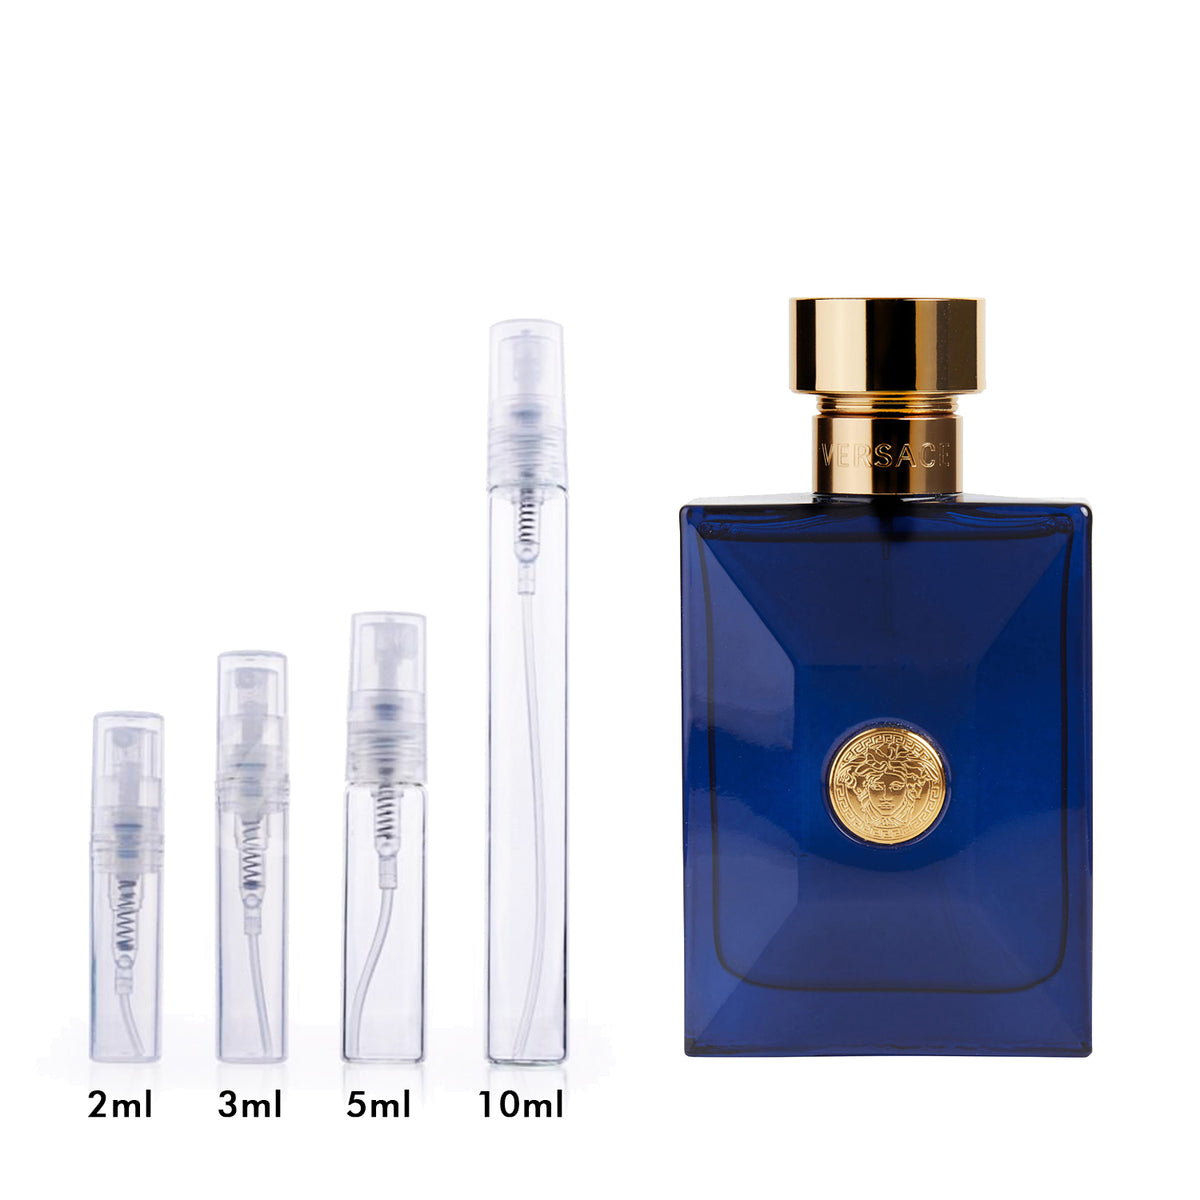 VERSACE DYLAN BLUE POUR HOMME - EAU DE TOILETTE SPRAY – Fragrance Room